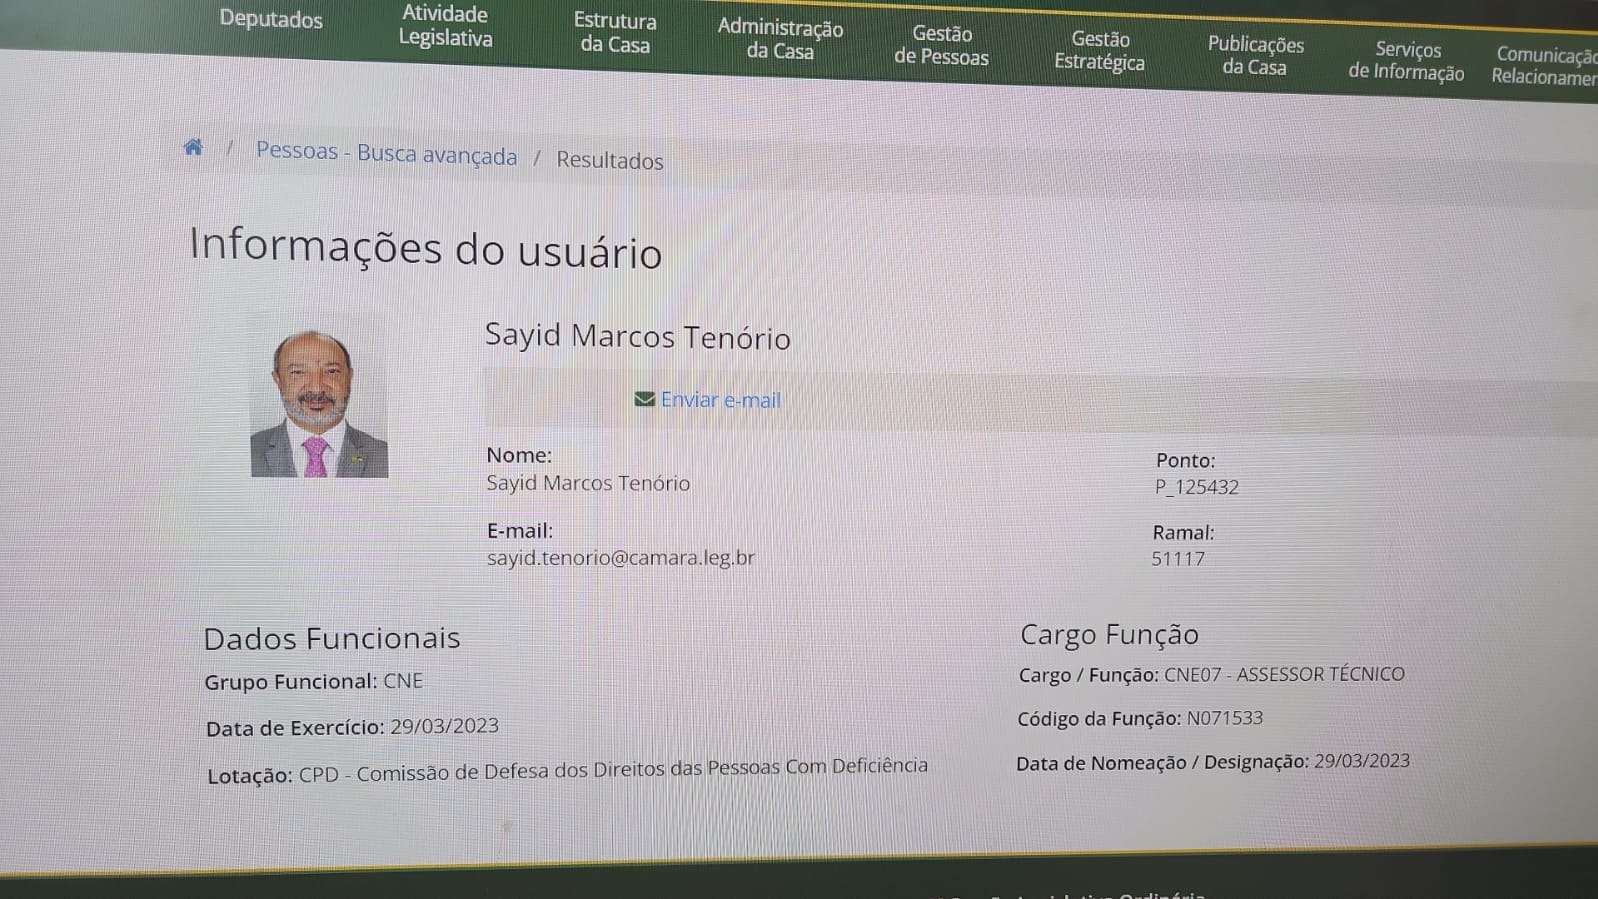 Sayid Marcos Tenório